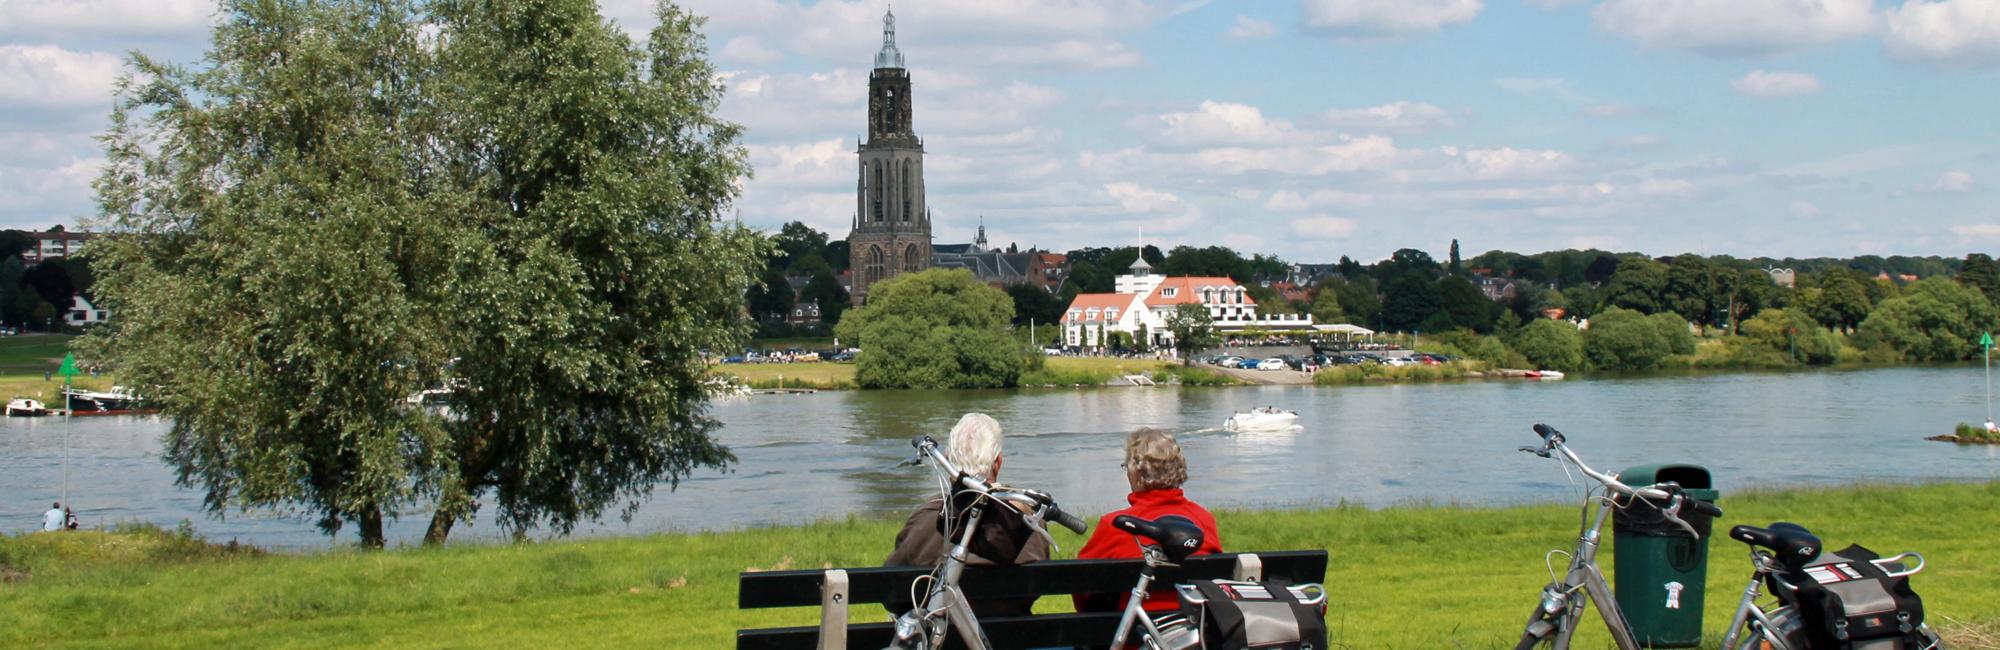 Over onze fietsvakanties in Nederland - Dutch Bike Tours